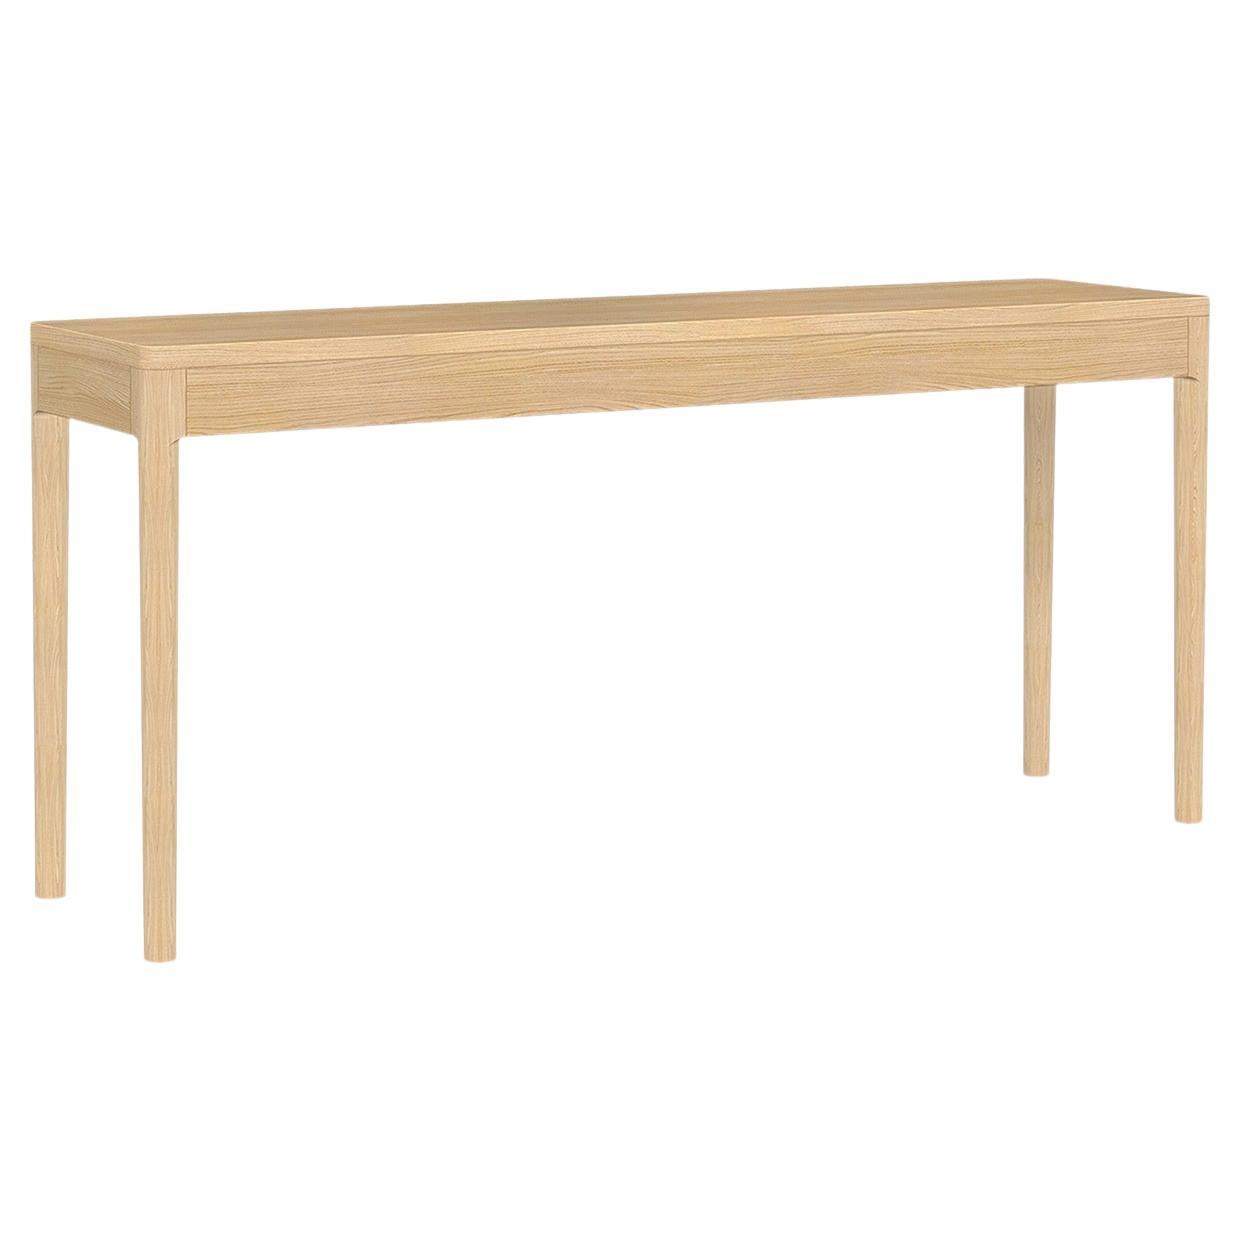 Table console moderne minimaliste en frêne